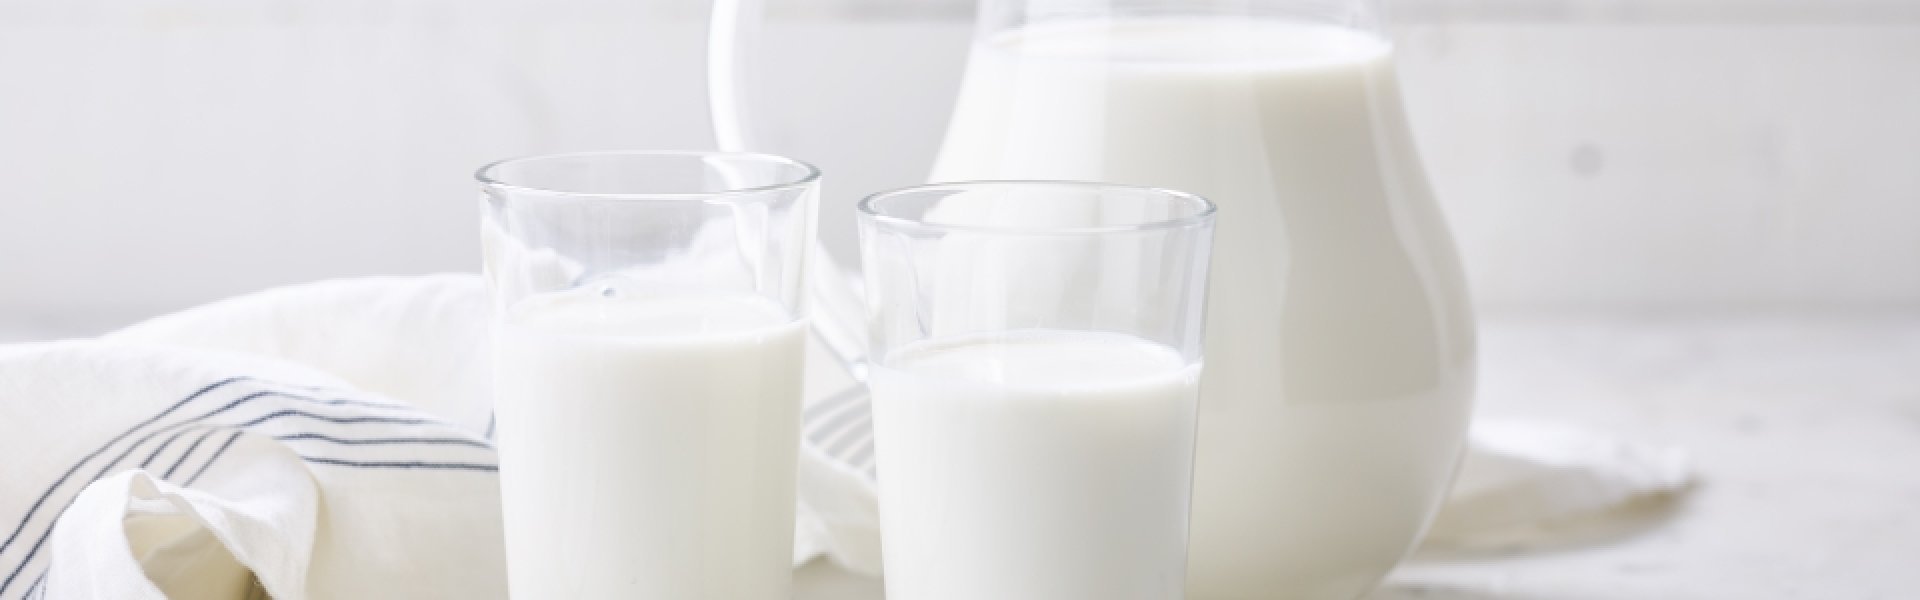 Glazen met melk